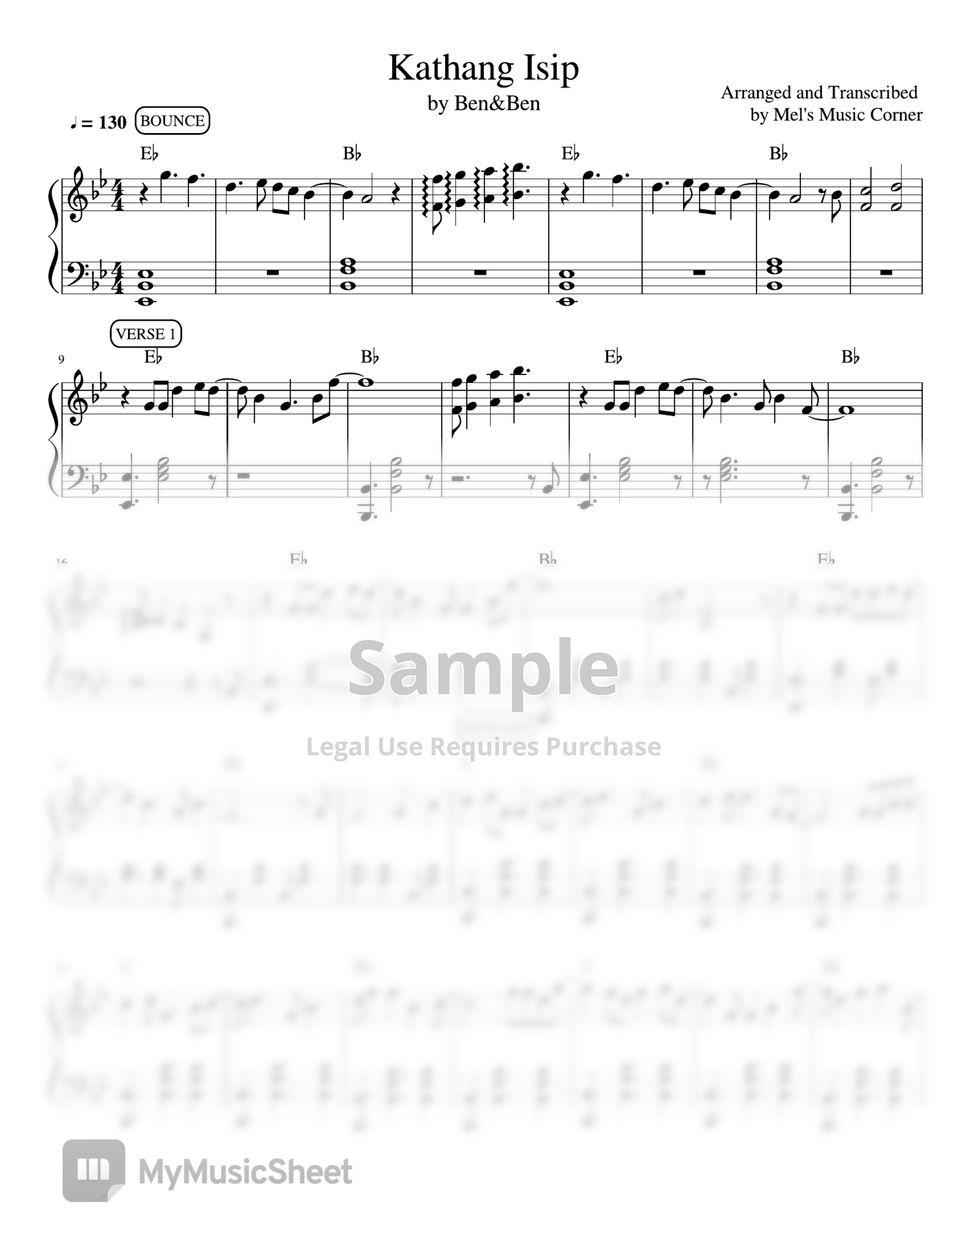 Ben&Ben - Kathang Isip (piano sheet music) by Mel's Music Corner